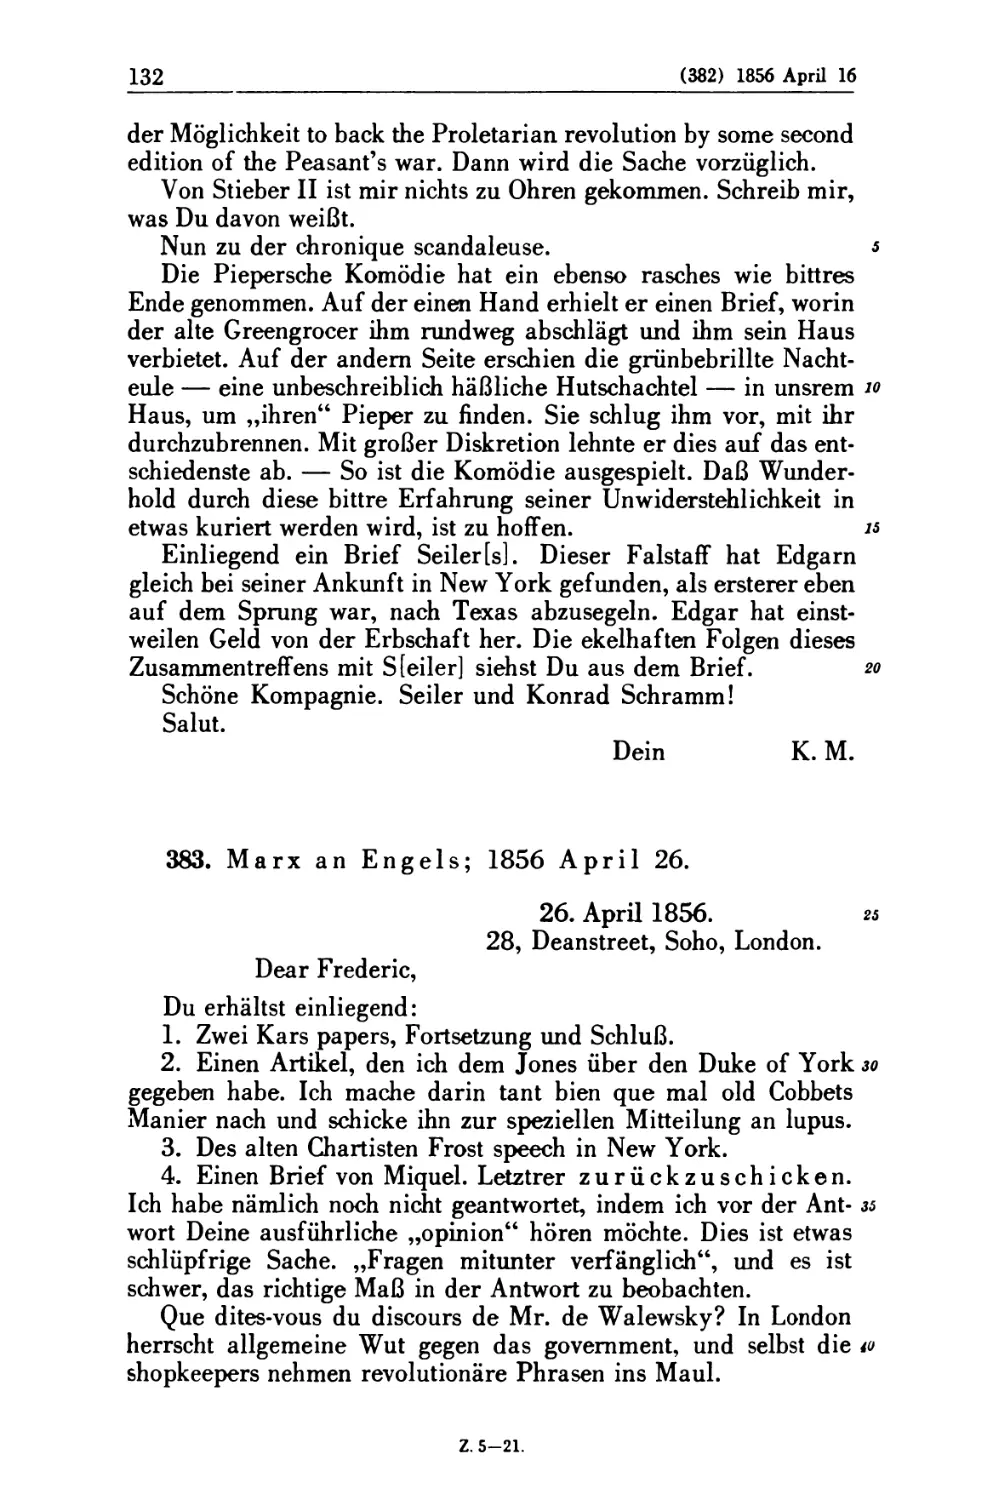 383. Marx an Engels; 1856 April 26